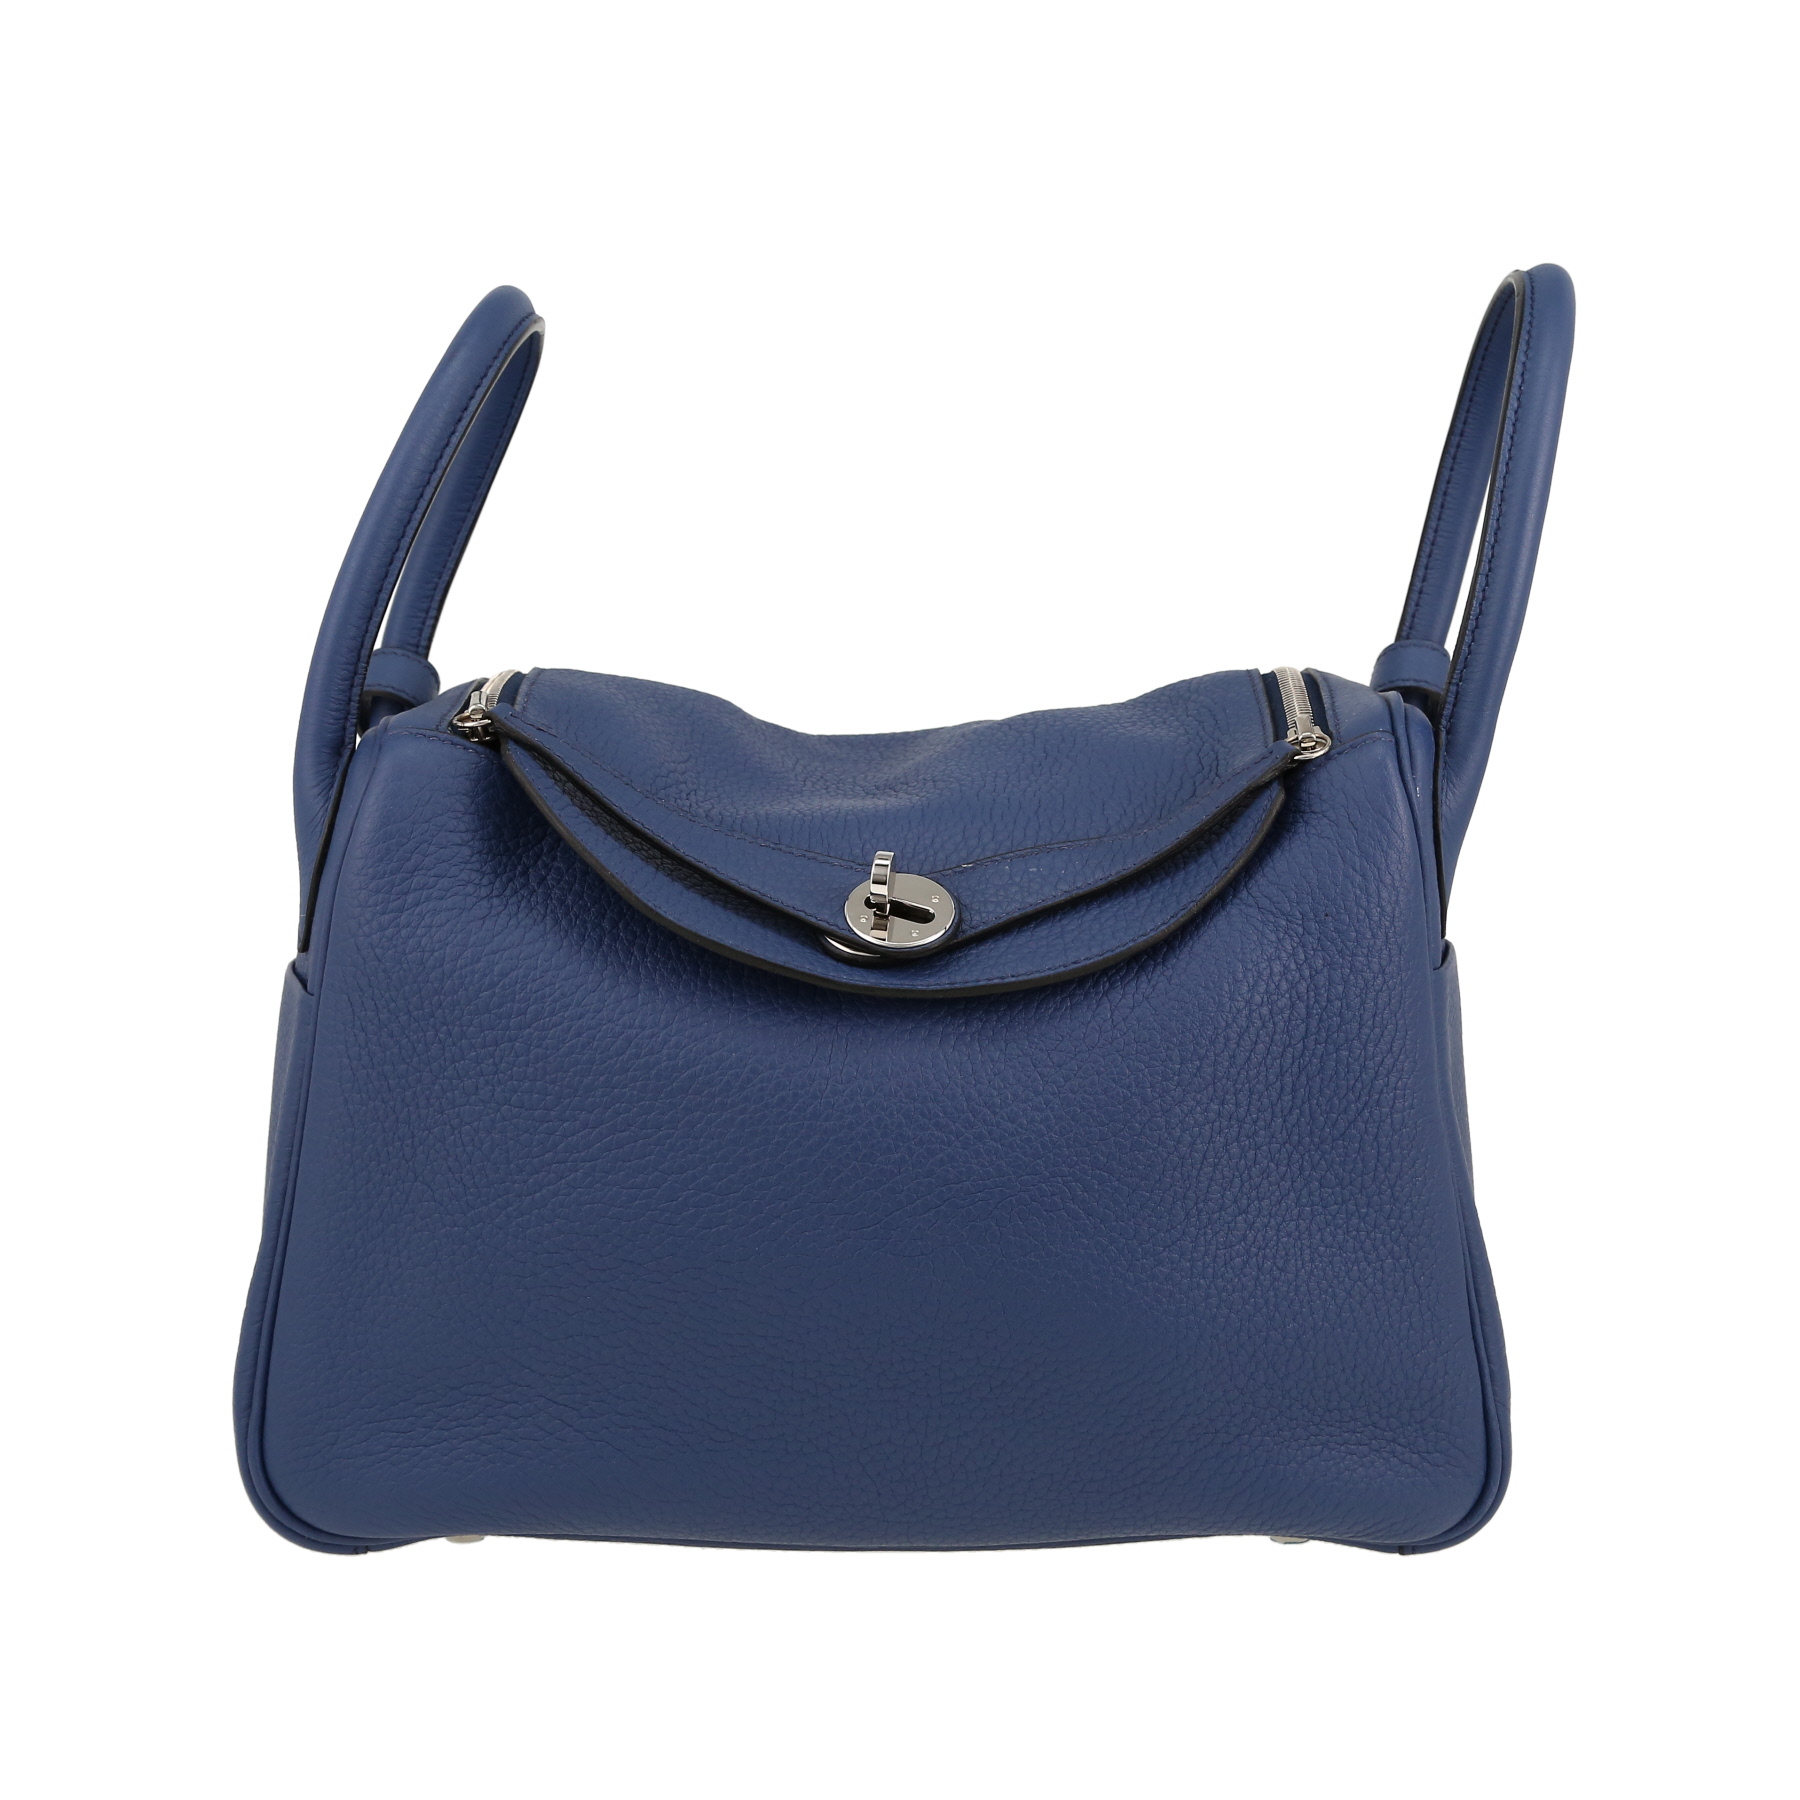 Lindy 30 cm Handbag In Blue Togo Leather